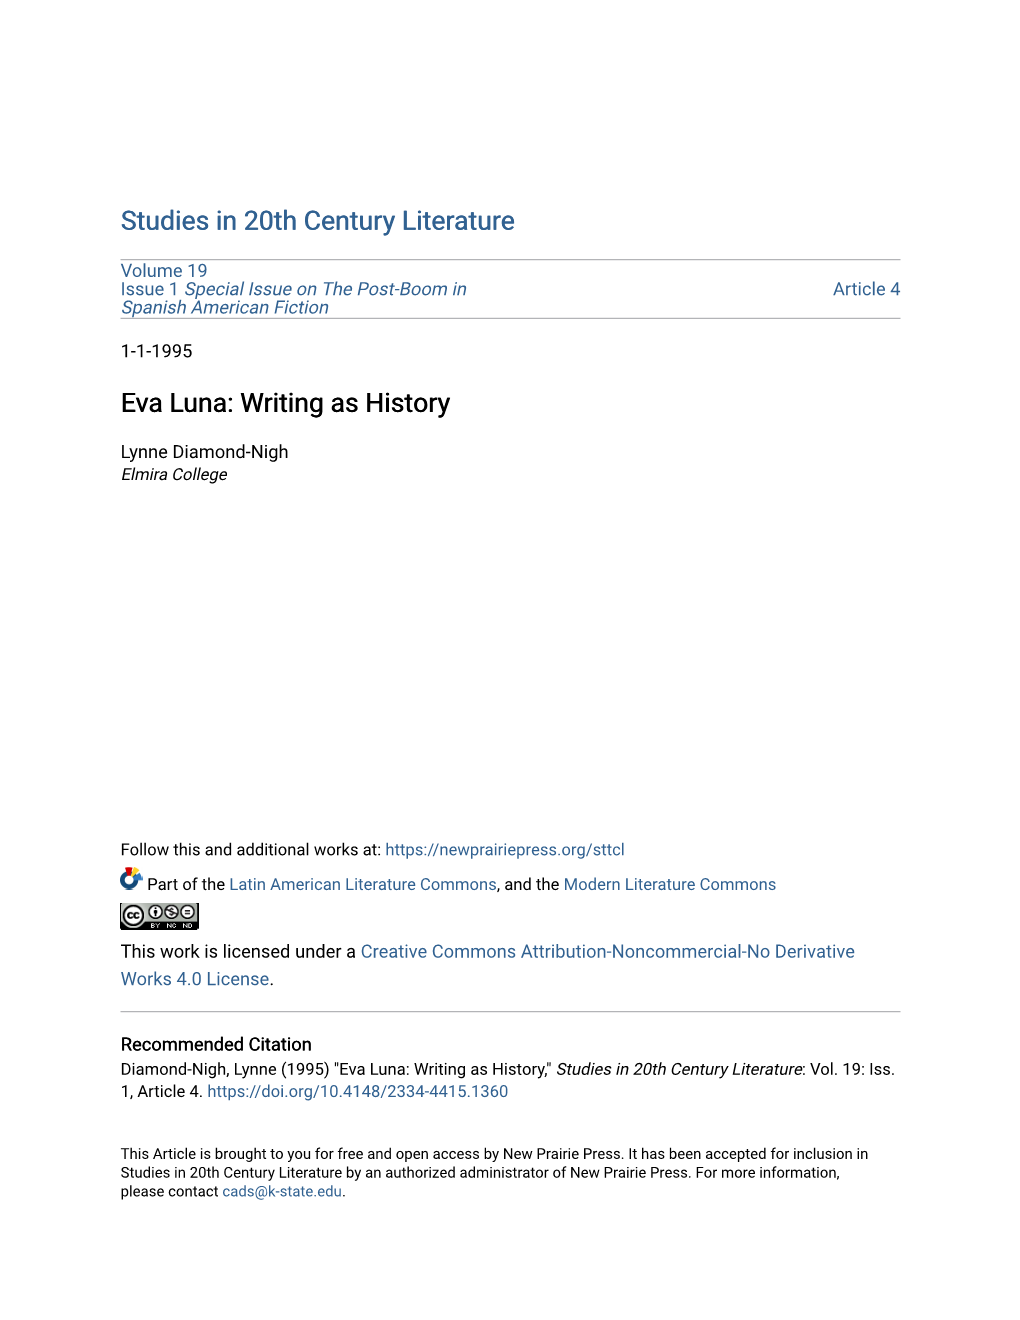 Eva Luna: Writing As History